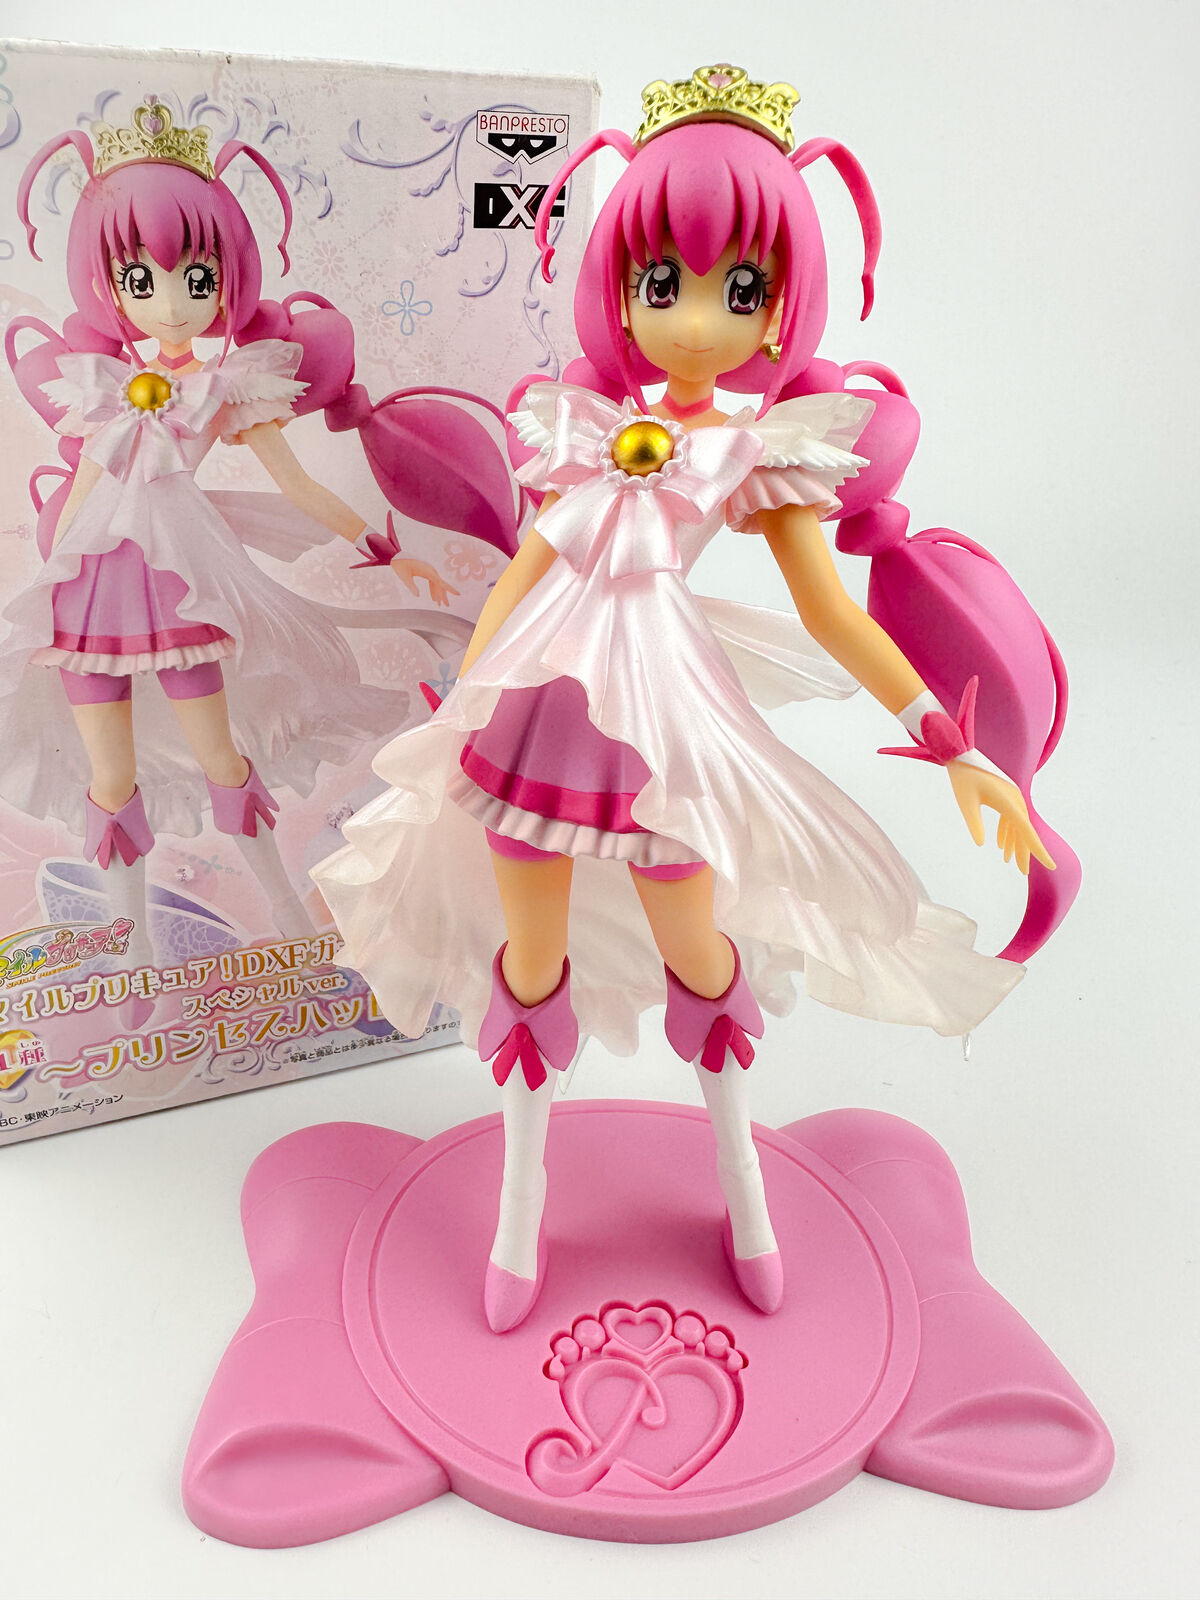 Glitter Force Smile Precure Princess Cure Happy Figure Special Ver. Banpresto